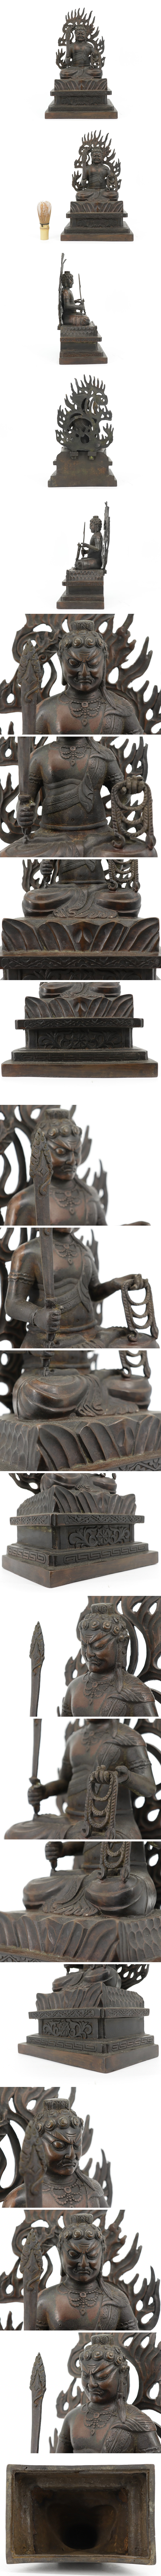 超歓迎得価仏教美術 銅製 不動明王坐仏像 高さ34㌢ 仏像 佛像 A088 仏像